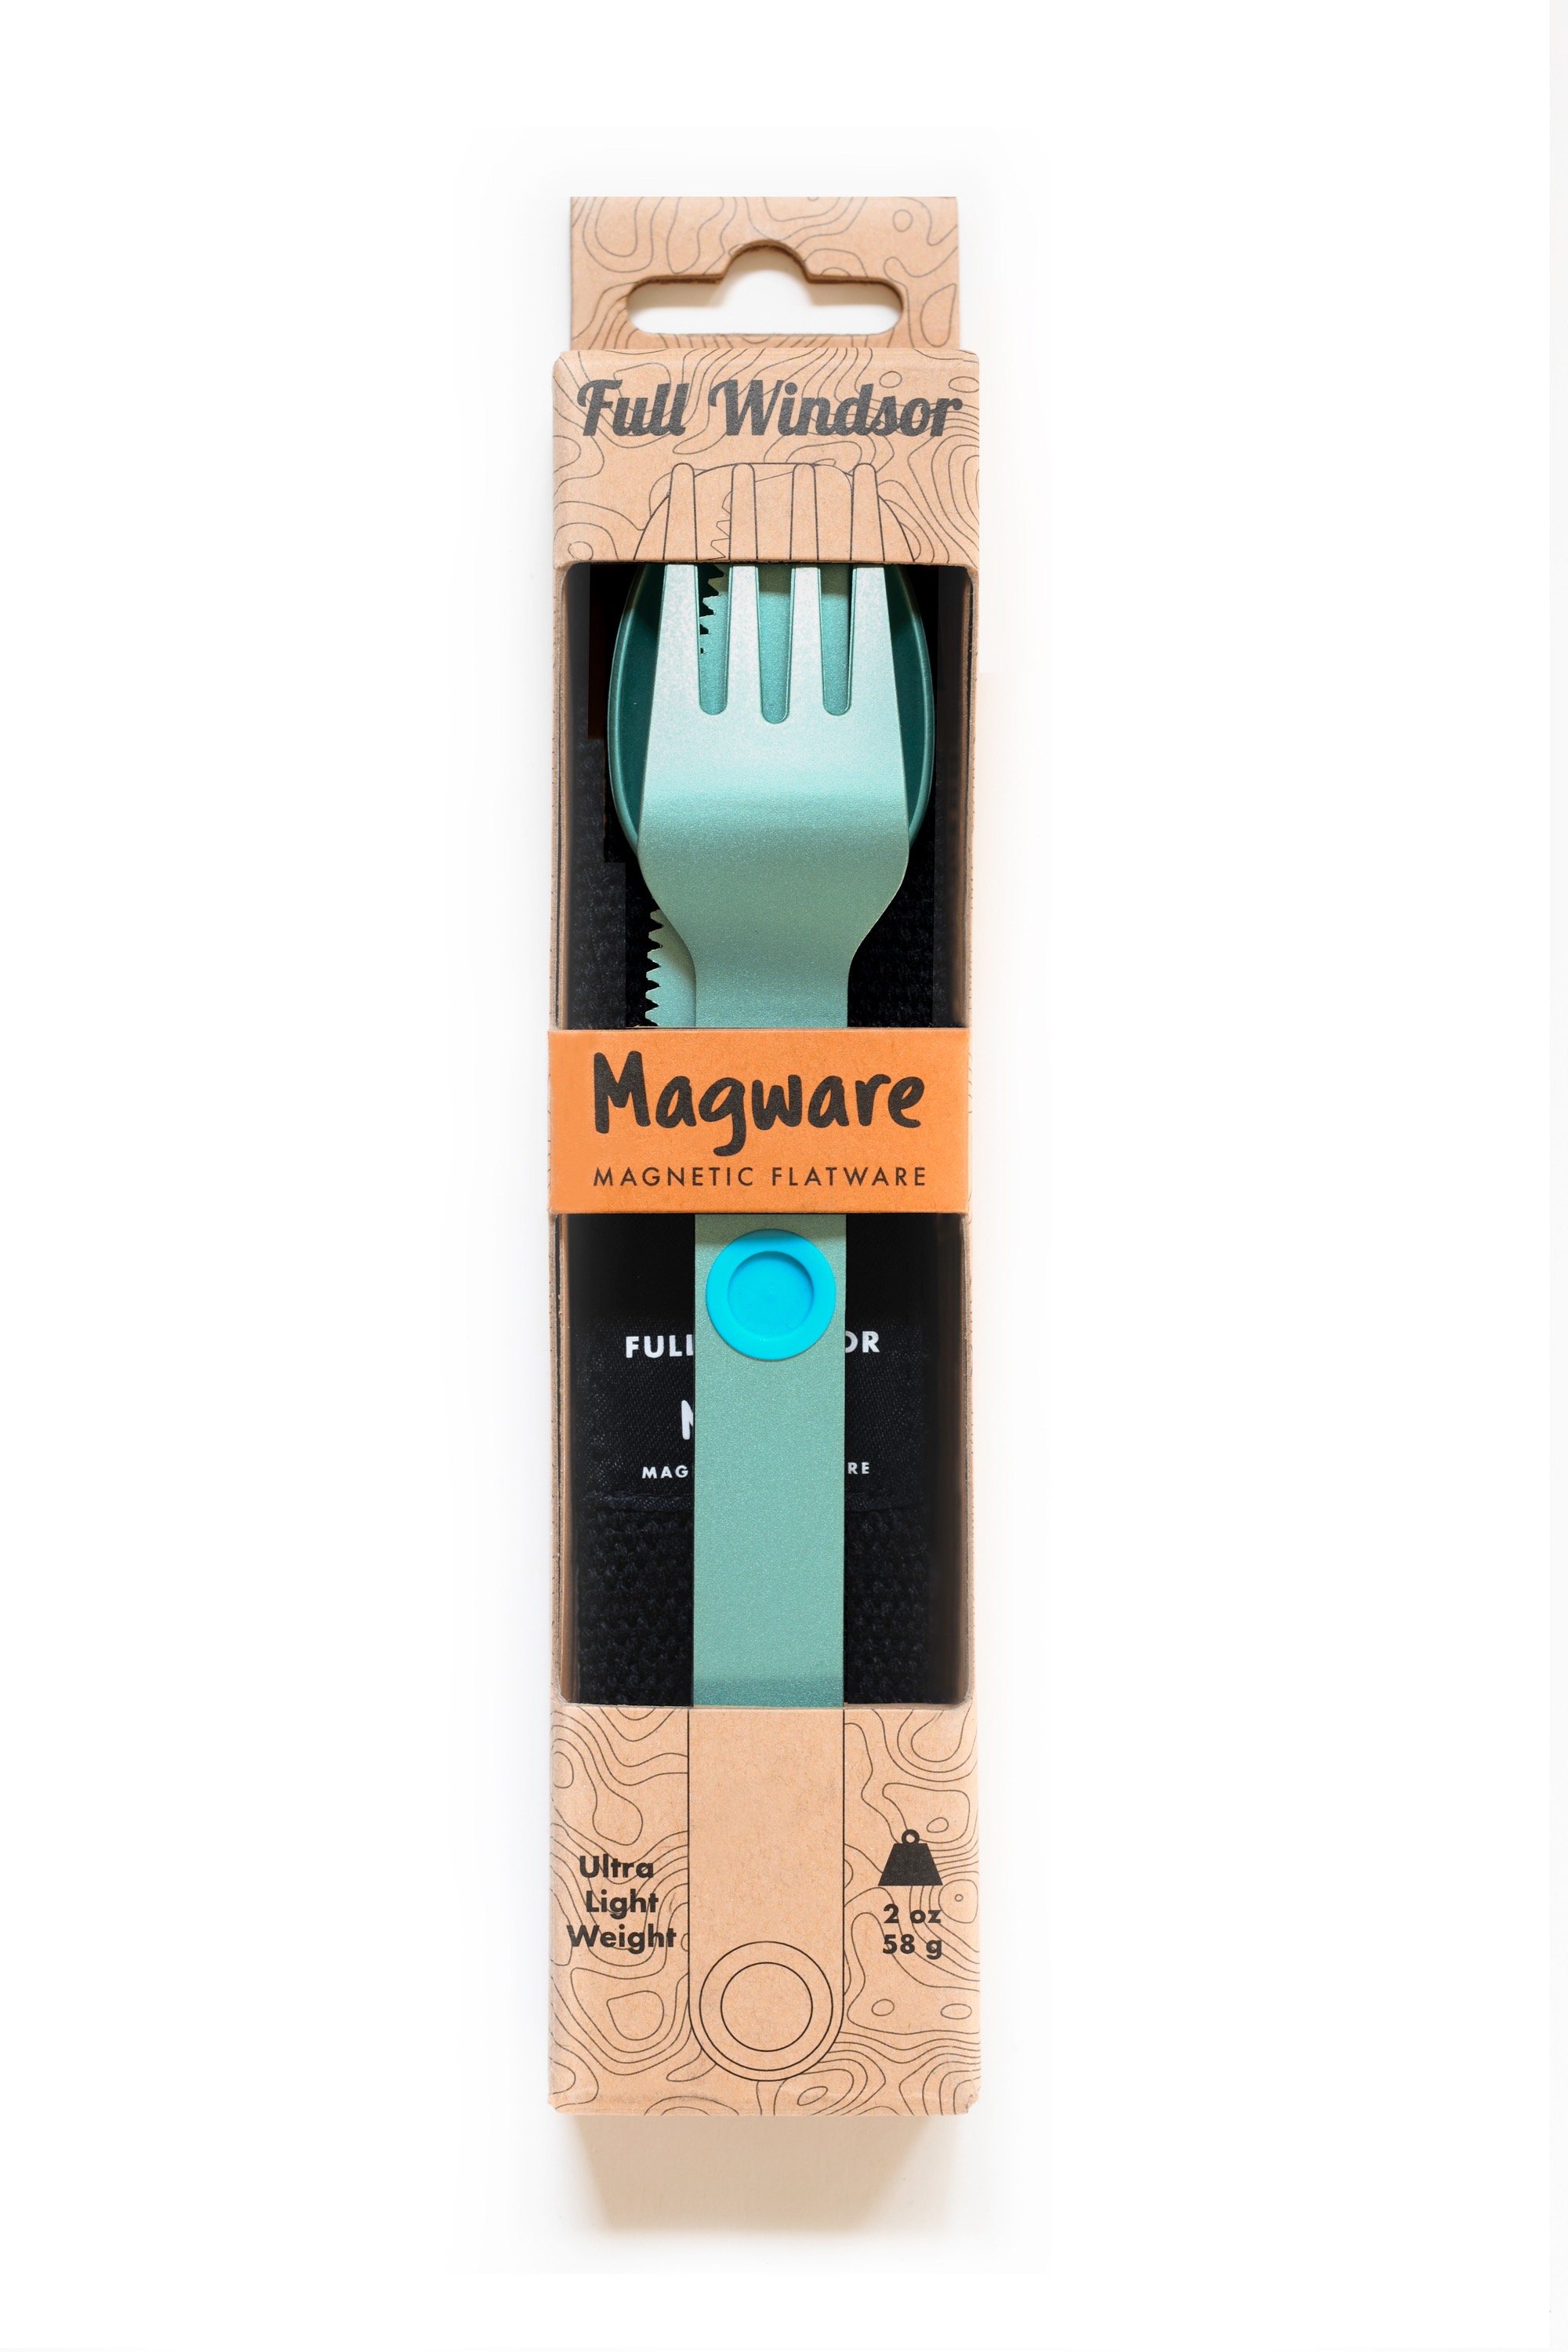 Full-Windsor Magware (turquoise)